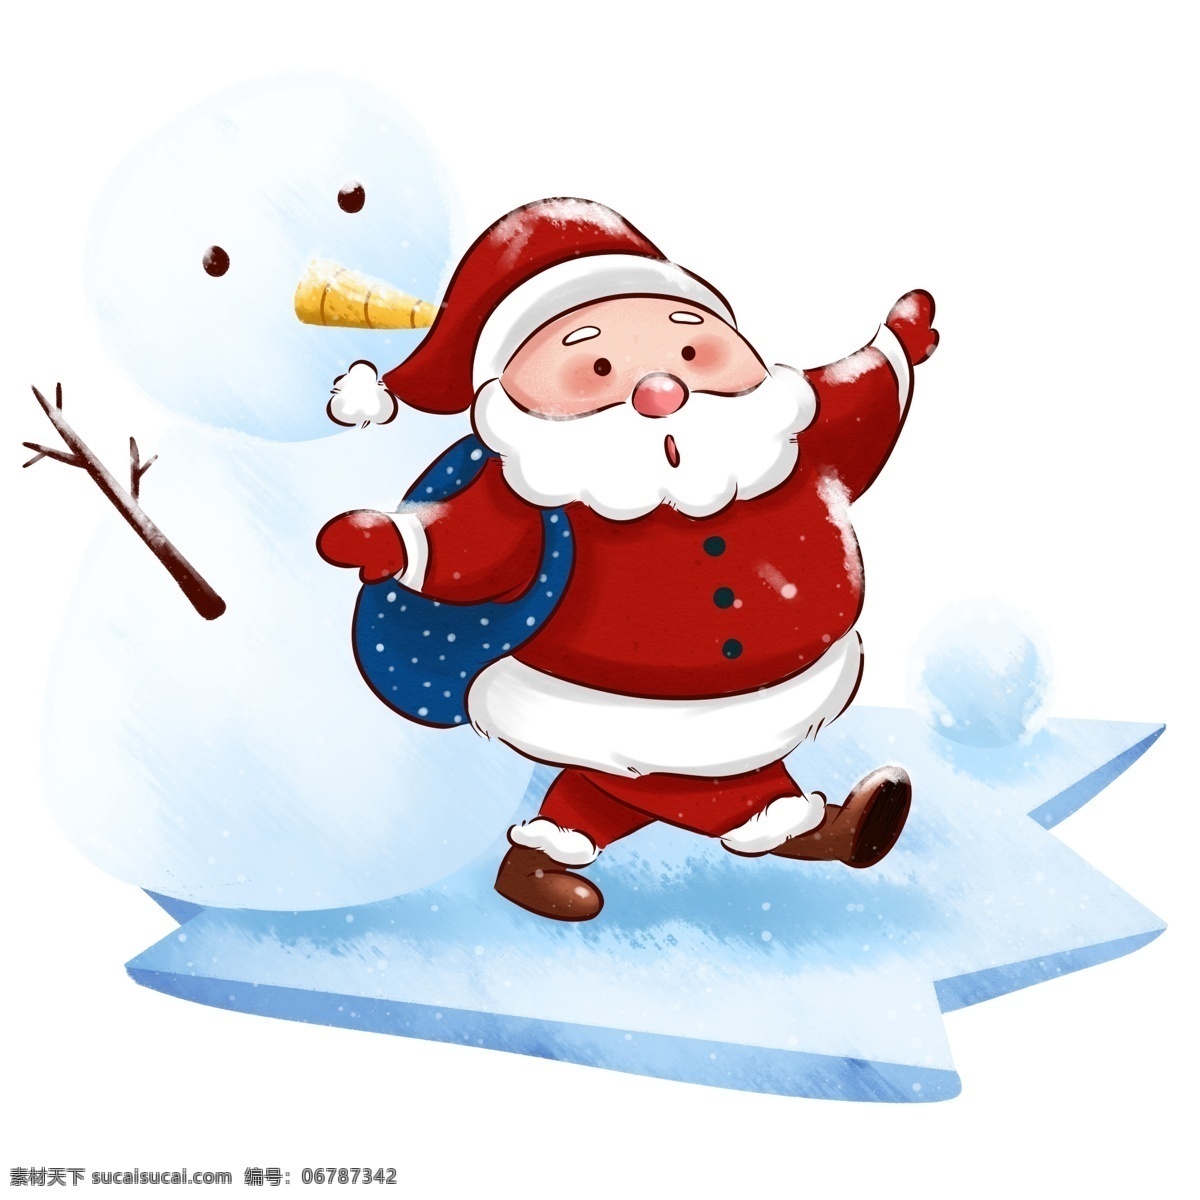 圣诞节 圣诞老人 雪地 行走 雪人 陪伴 冬季 旅行 红色 装饰 圣诞 滑雪 节日 下雪 冬天 冬日 快乐 卡通人物形象